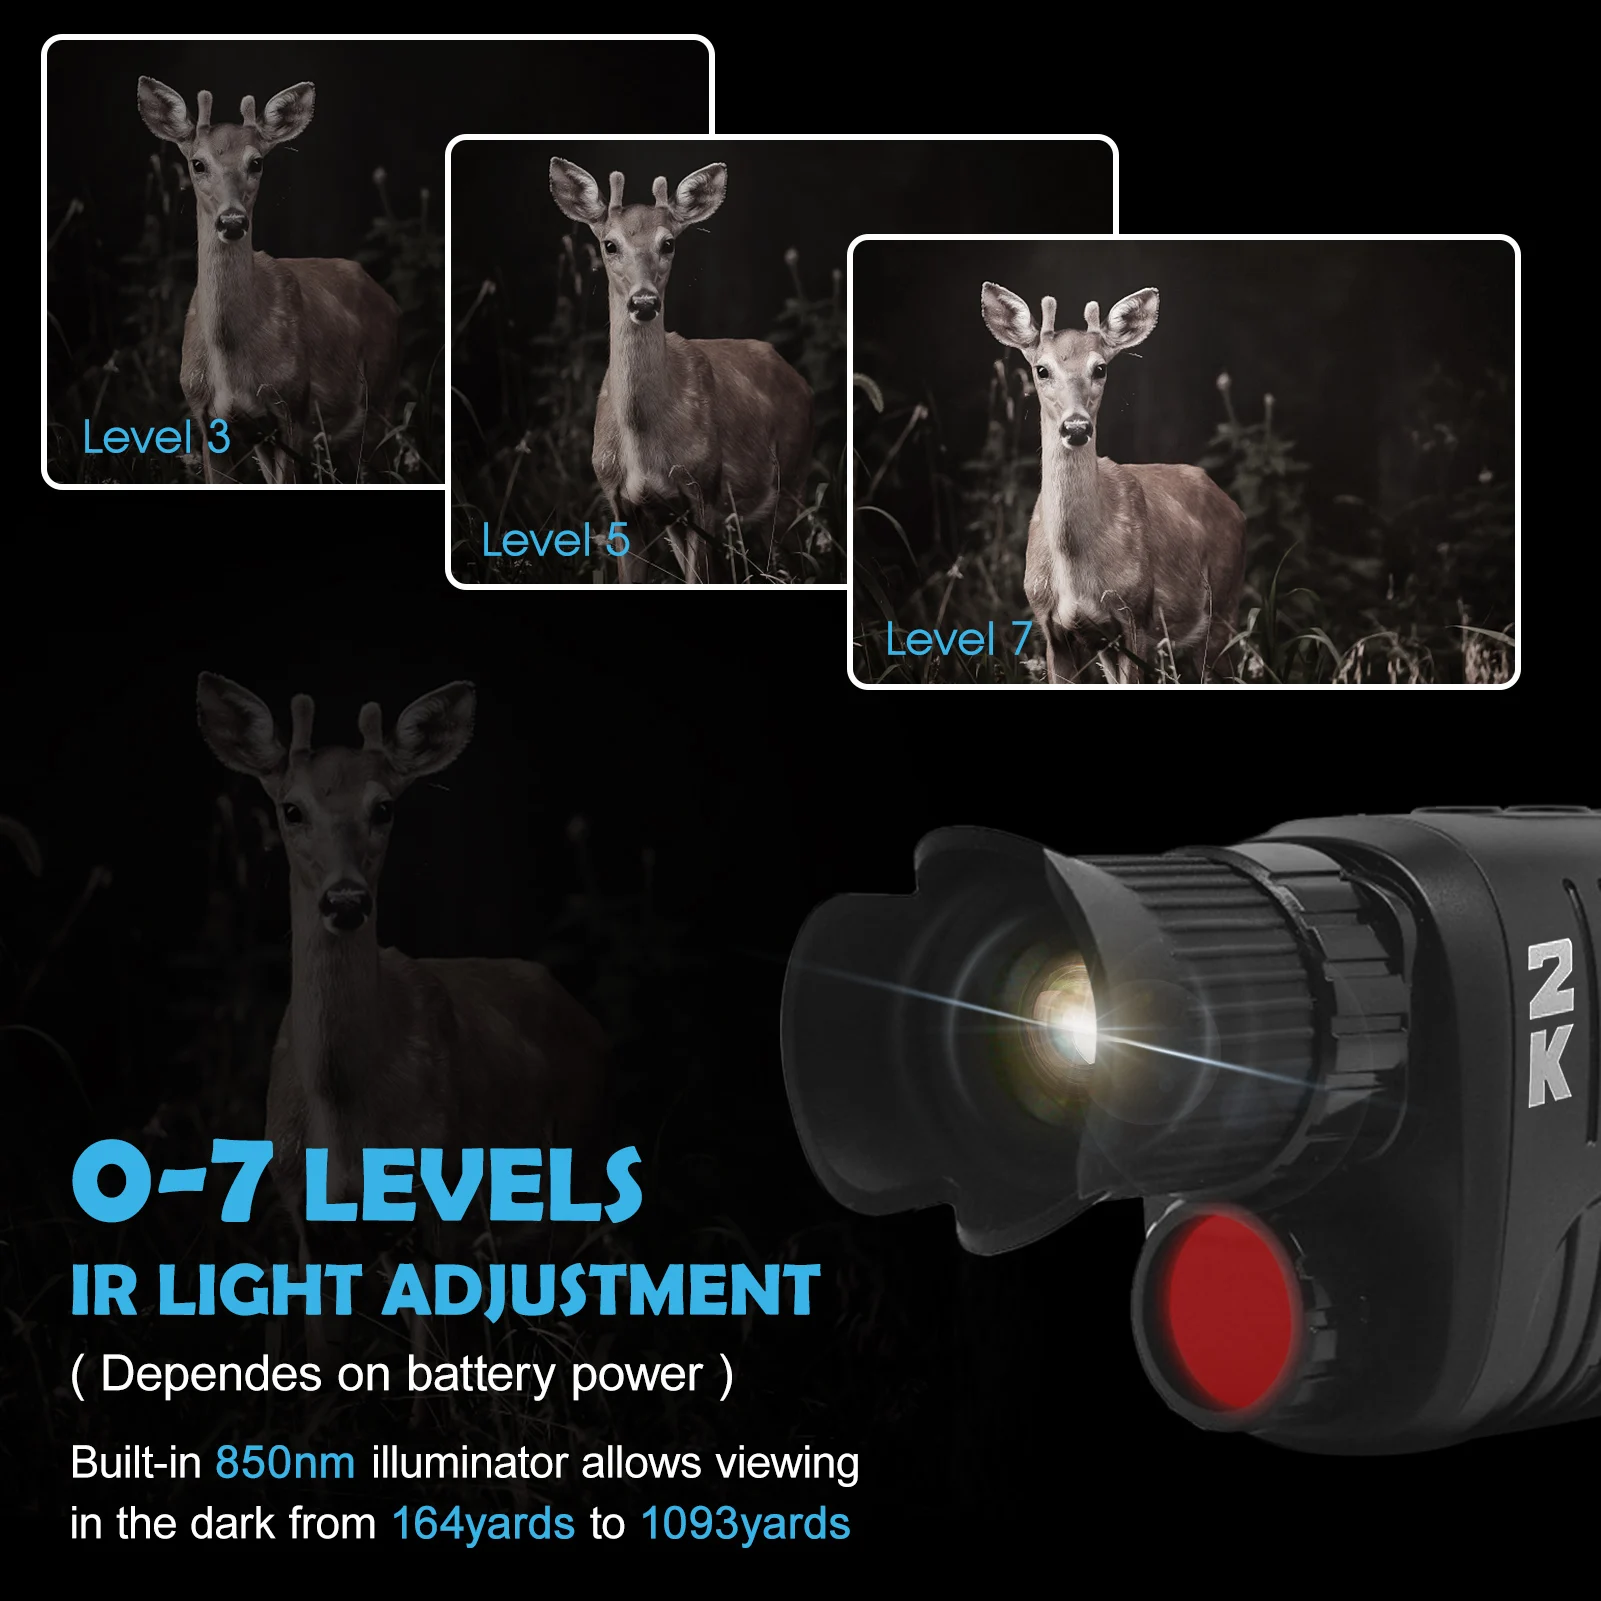 Монокуляр 1 5 дюйма 2K HD инфракрасная цифровая полноцветная камера ночного видения